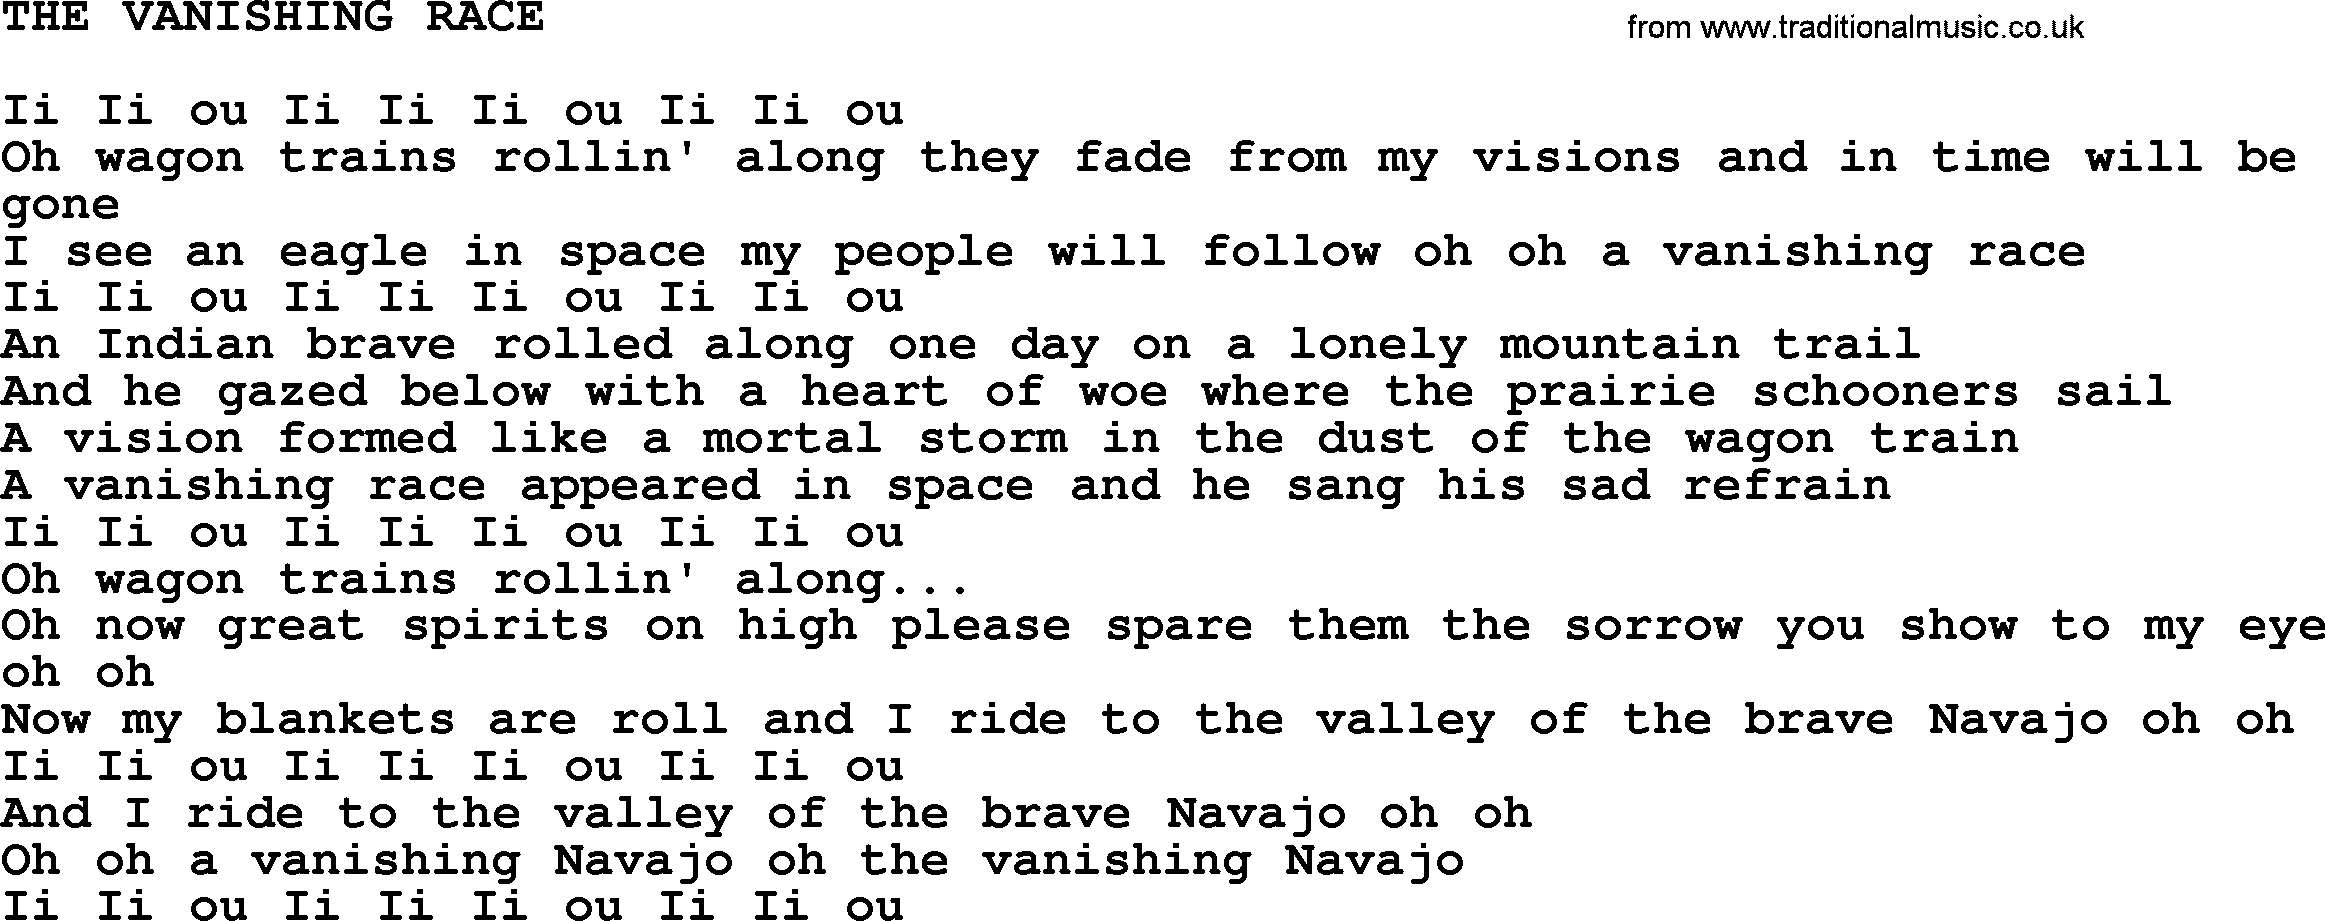 Johnny Cash song The Vanishing Race.txt lyrics